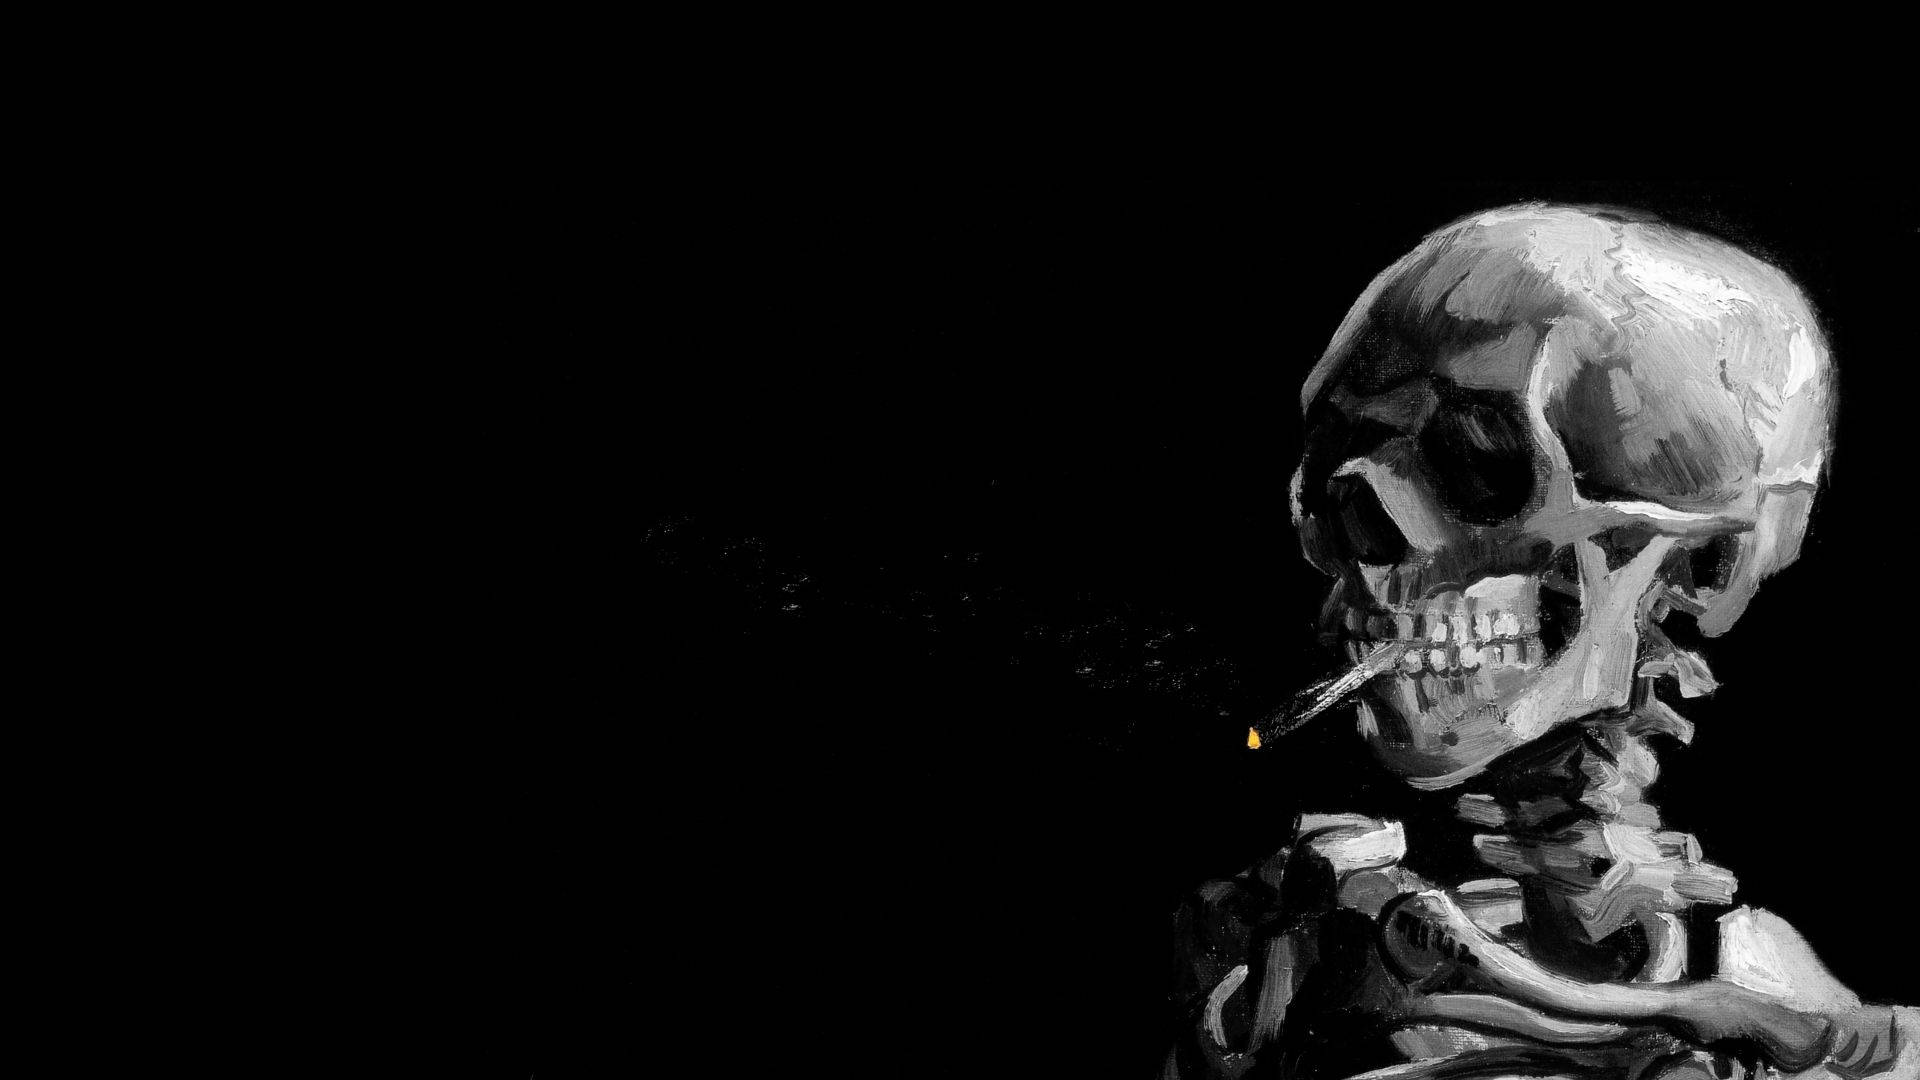 Bildskärmsbakgrundmed En Rökande Skelettcigarettrökare. Wallpaper